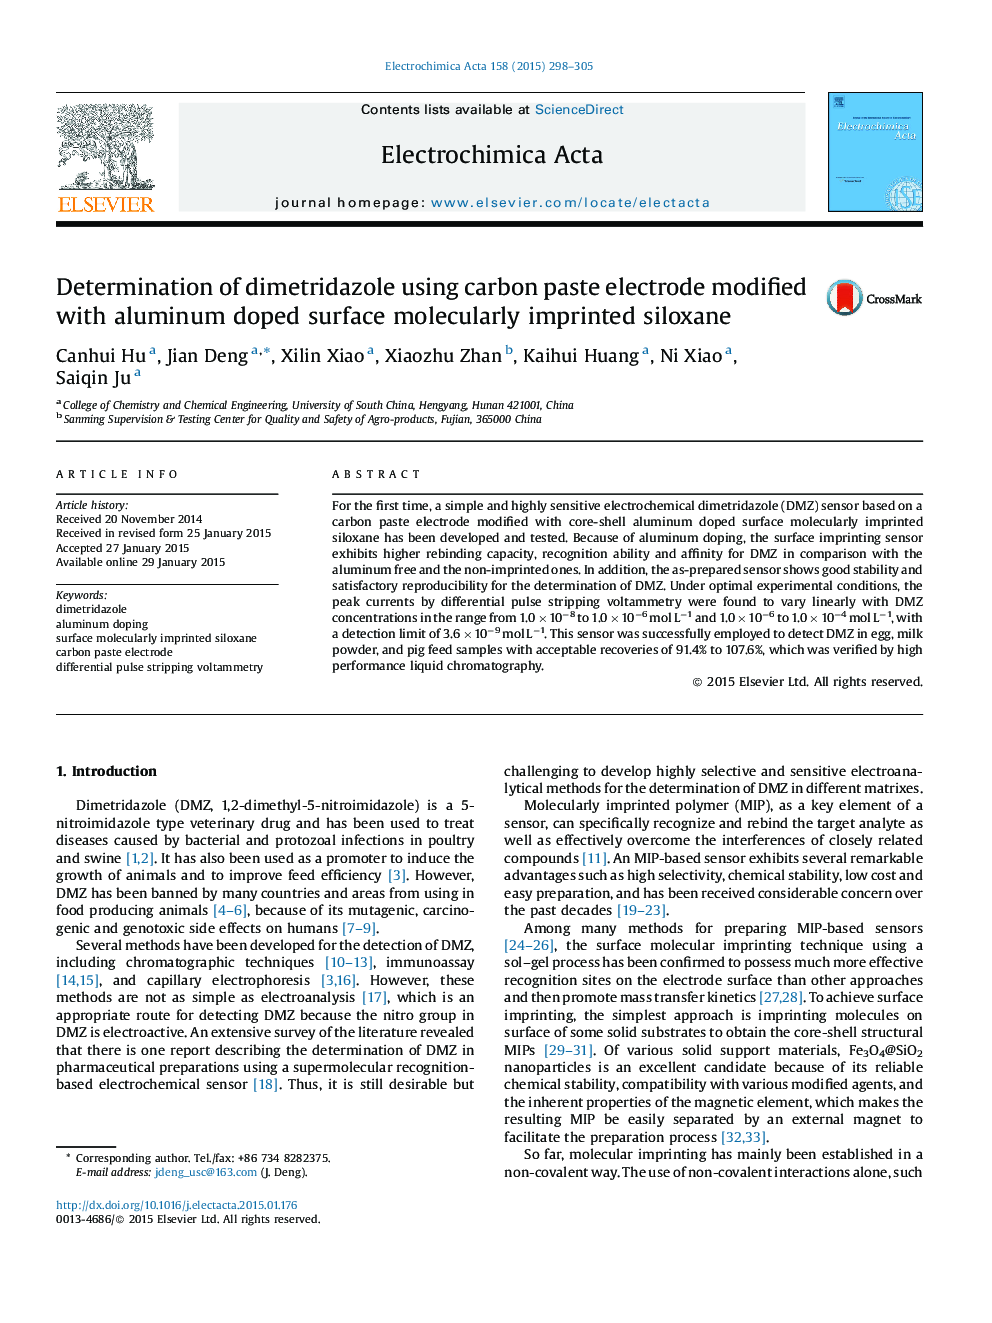 تعیین دیمتریدازول با استفاده از الکترودهای پودر کربن اصلاح شده با سطح آلومینیوم شده با سیلوکسان مولکولی 